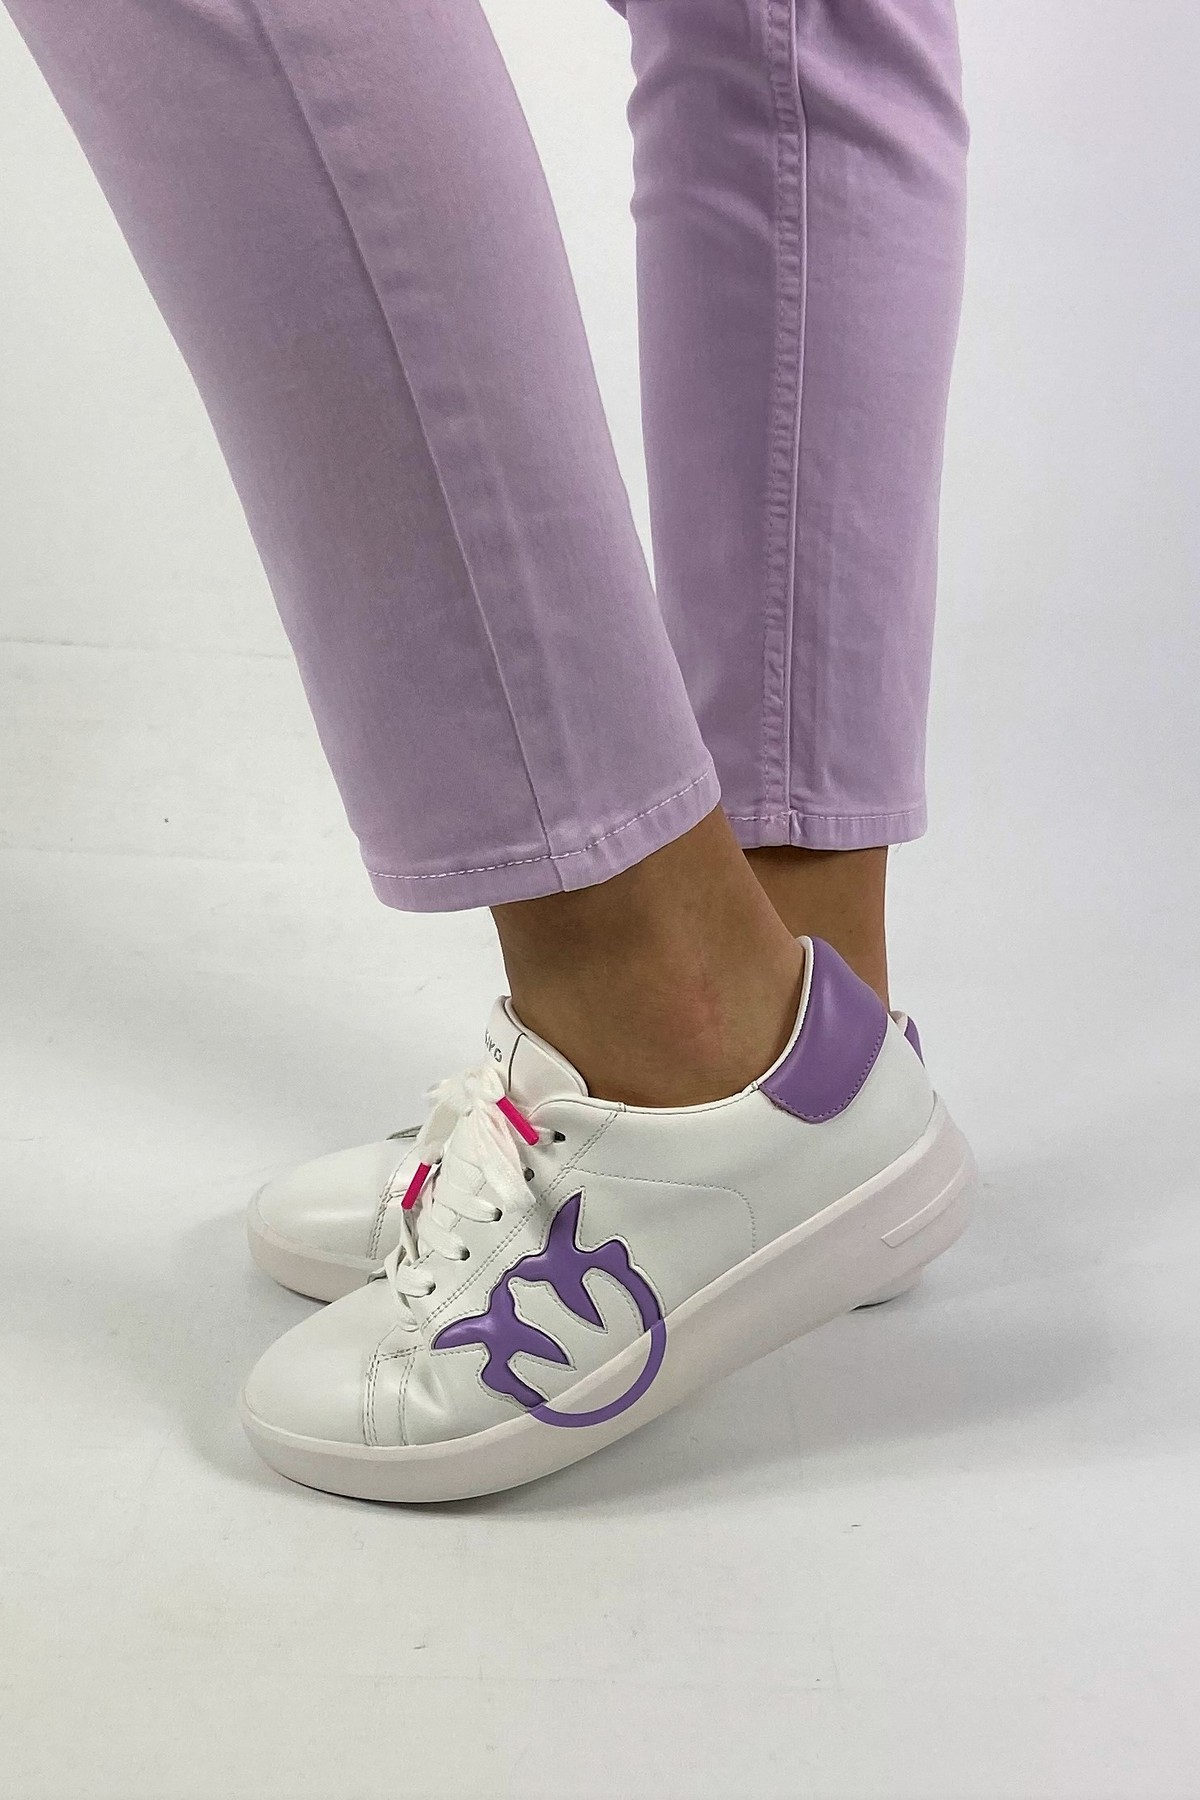 Sneaker laag Pinko logo in de kleur wit paars van het merk Pinko